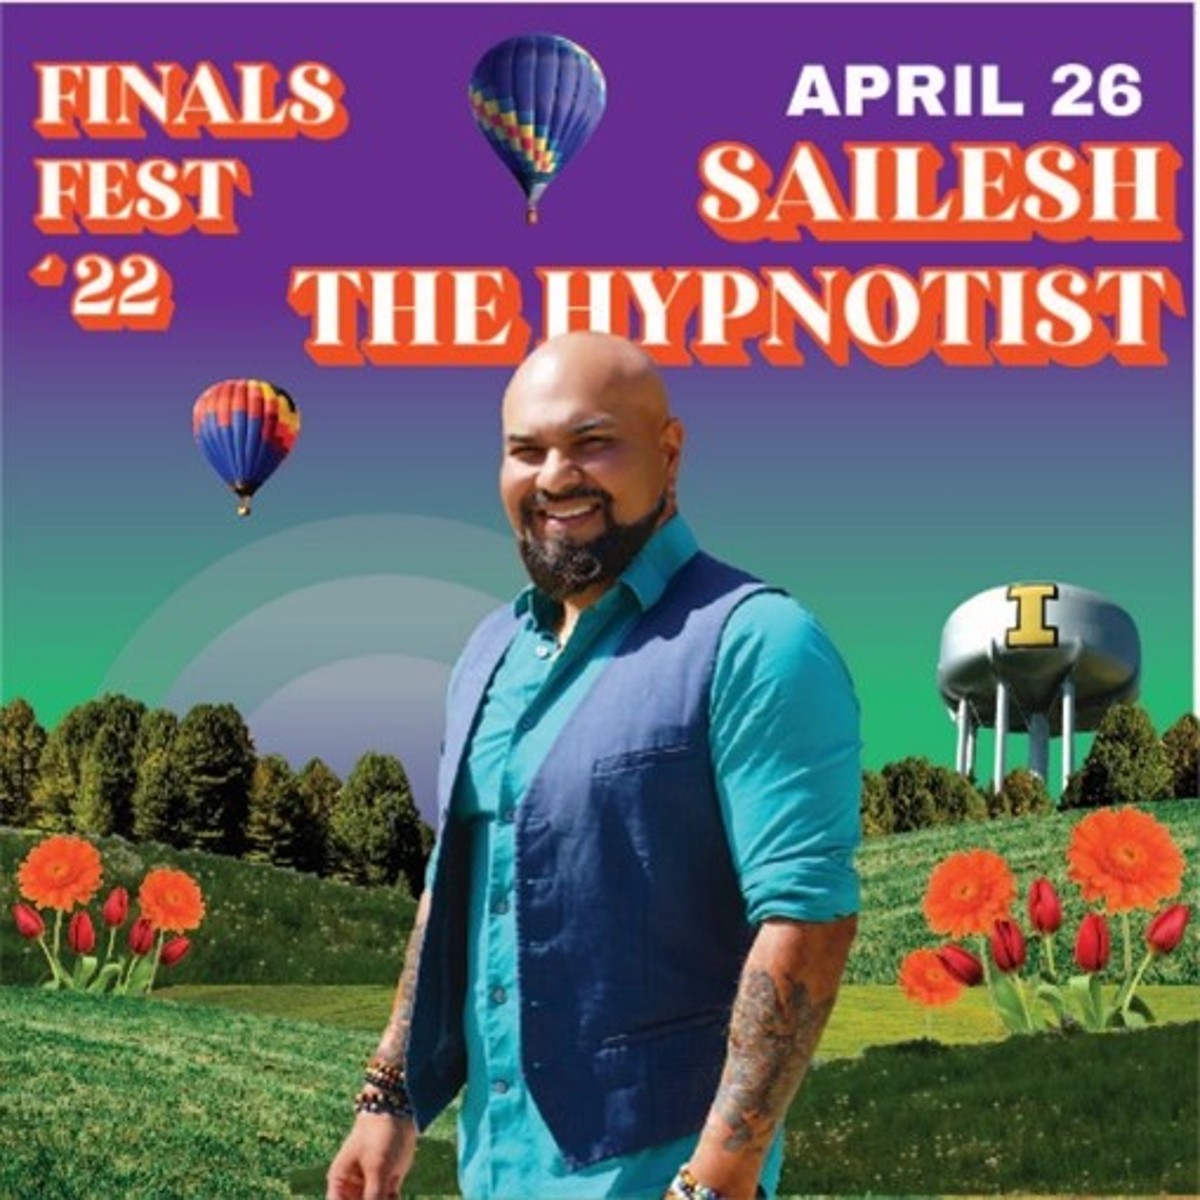 2022 Finals Fest Sailesh the Hypnotist Performance